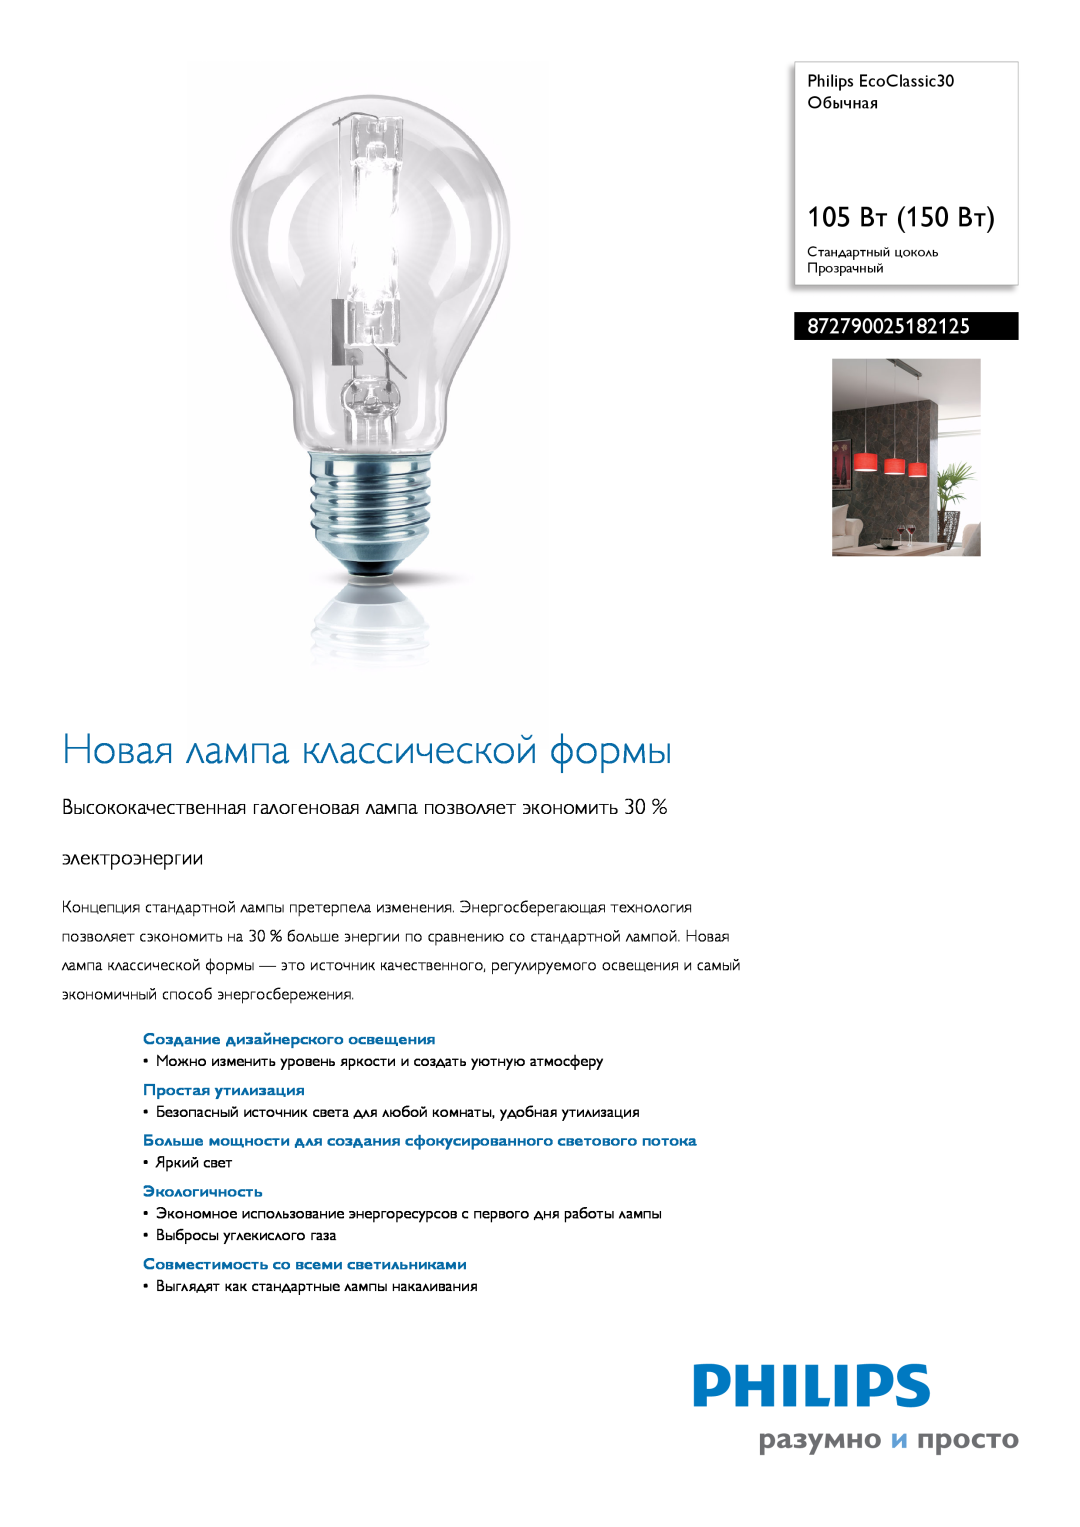 Philips manual 872790025182125, Создание дизайнерского освещения, Простая утилизация, Экологичность, 105 Вт 150 Вт 